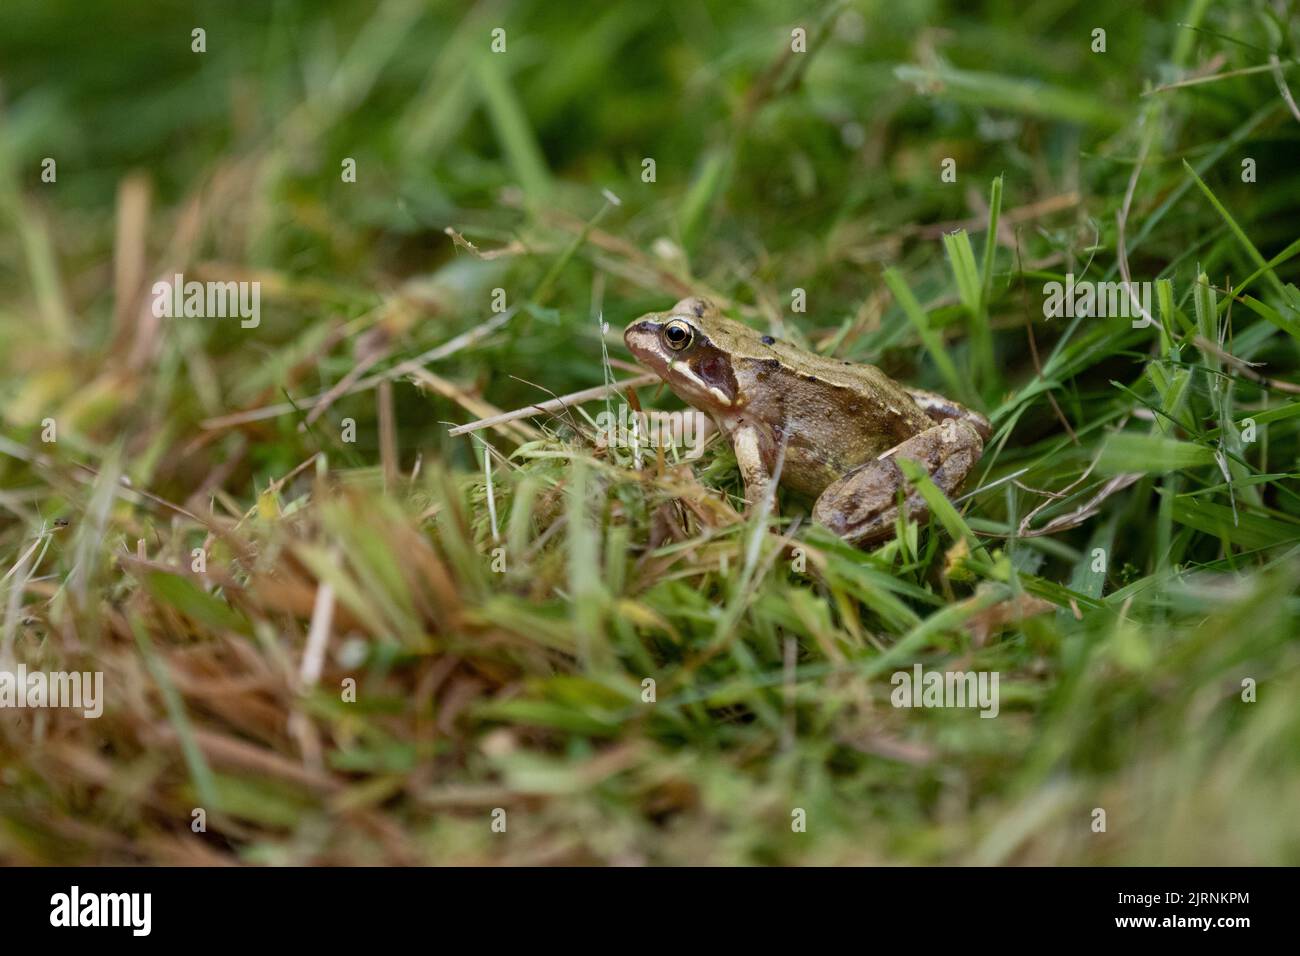 Giovane rana comune (rana temporaria) che è scappata per poco un rasaerba e strimmer che sono stati utilizzati per tagliare l'erba lunga in un giardino faunistico Foto Stock